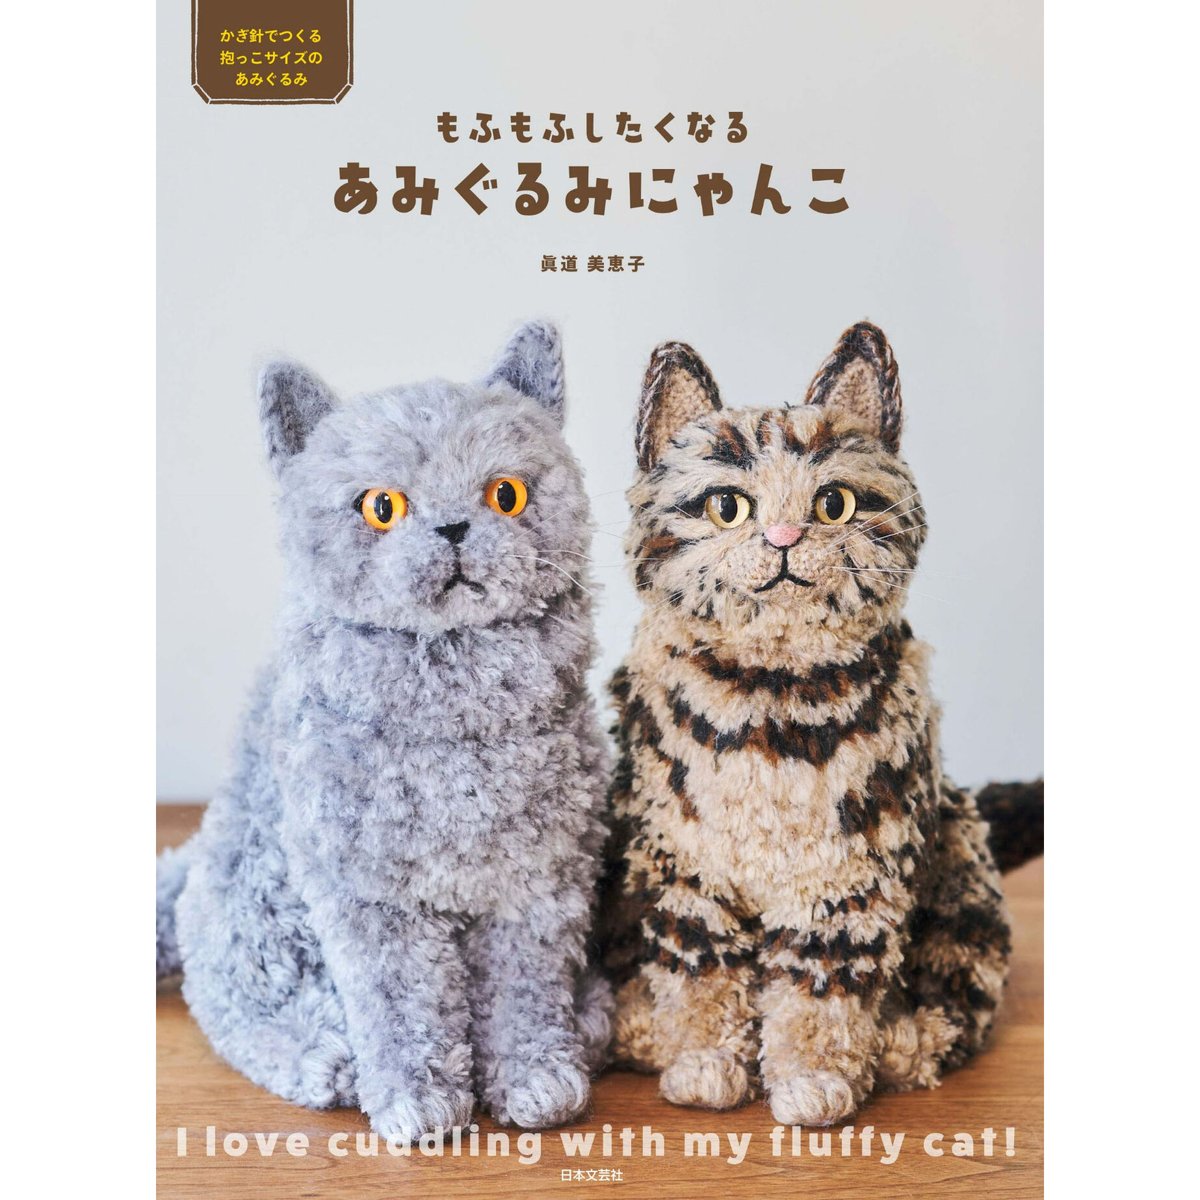 もふもふしたくなる あみぐるみにゃんこ | Cat's Meow Books Virtual ...